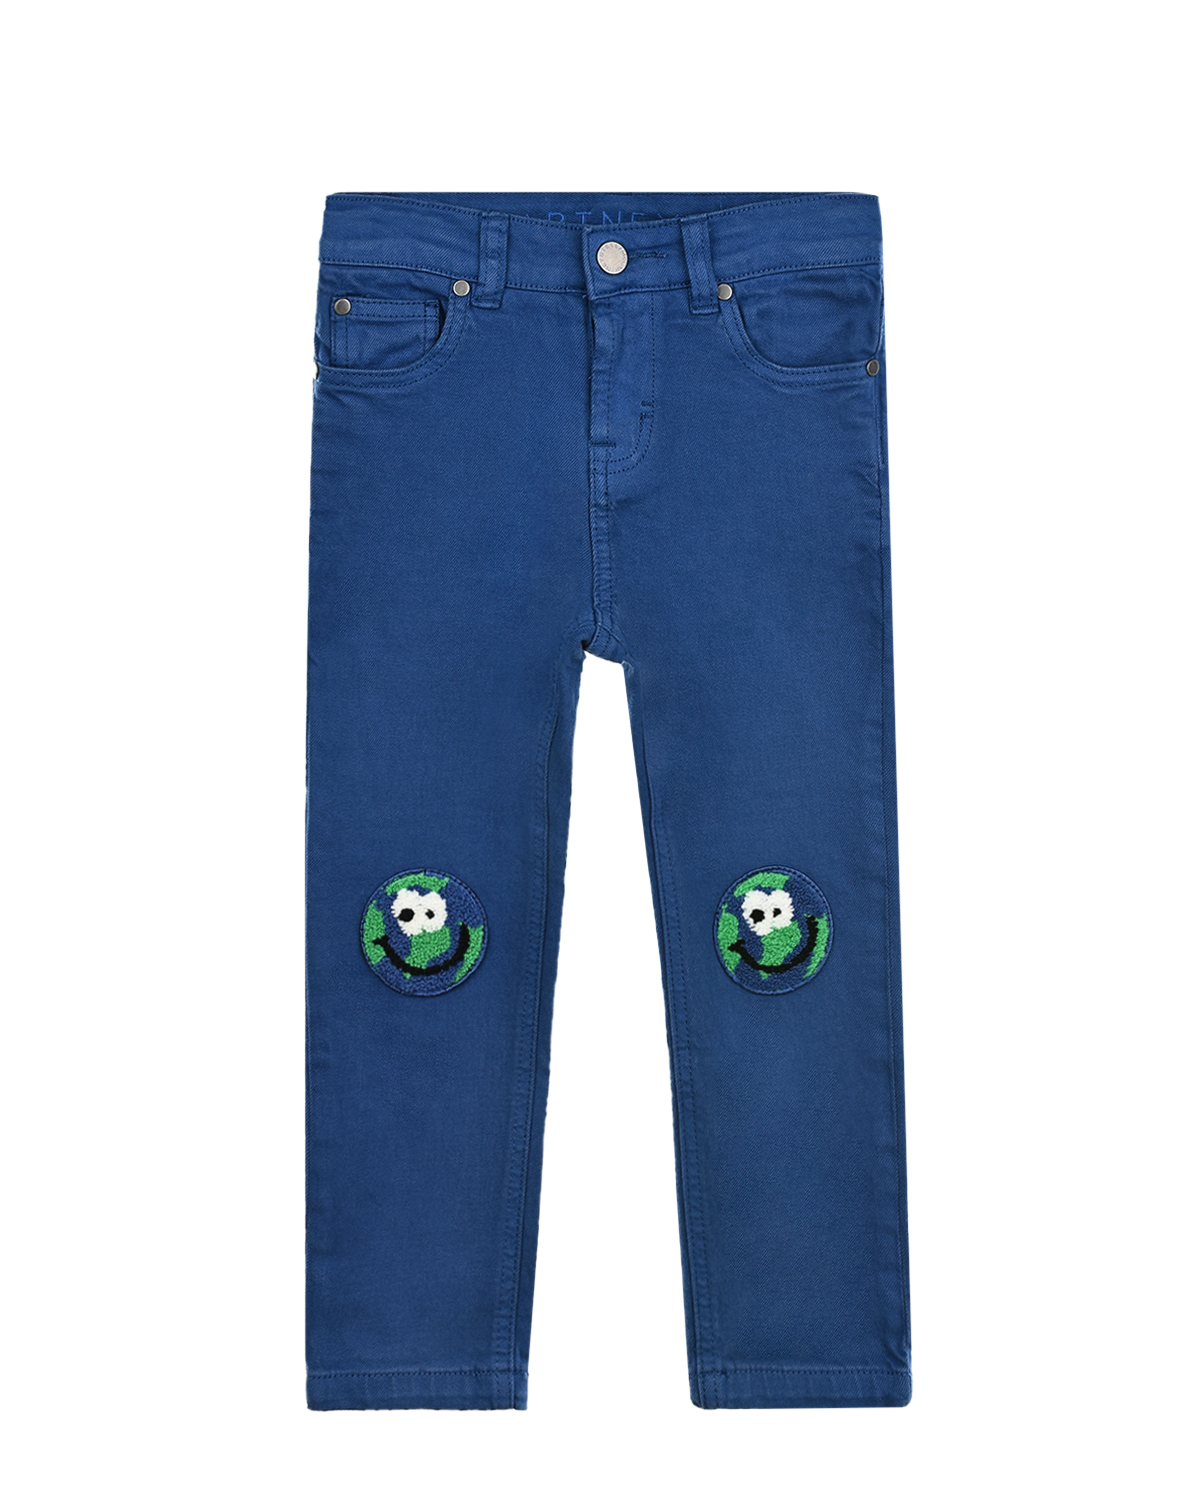 Синие джинсы с патчами на коленях Stella McCartney детские